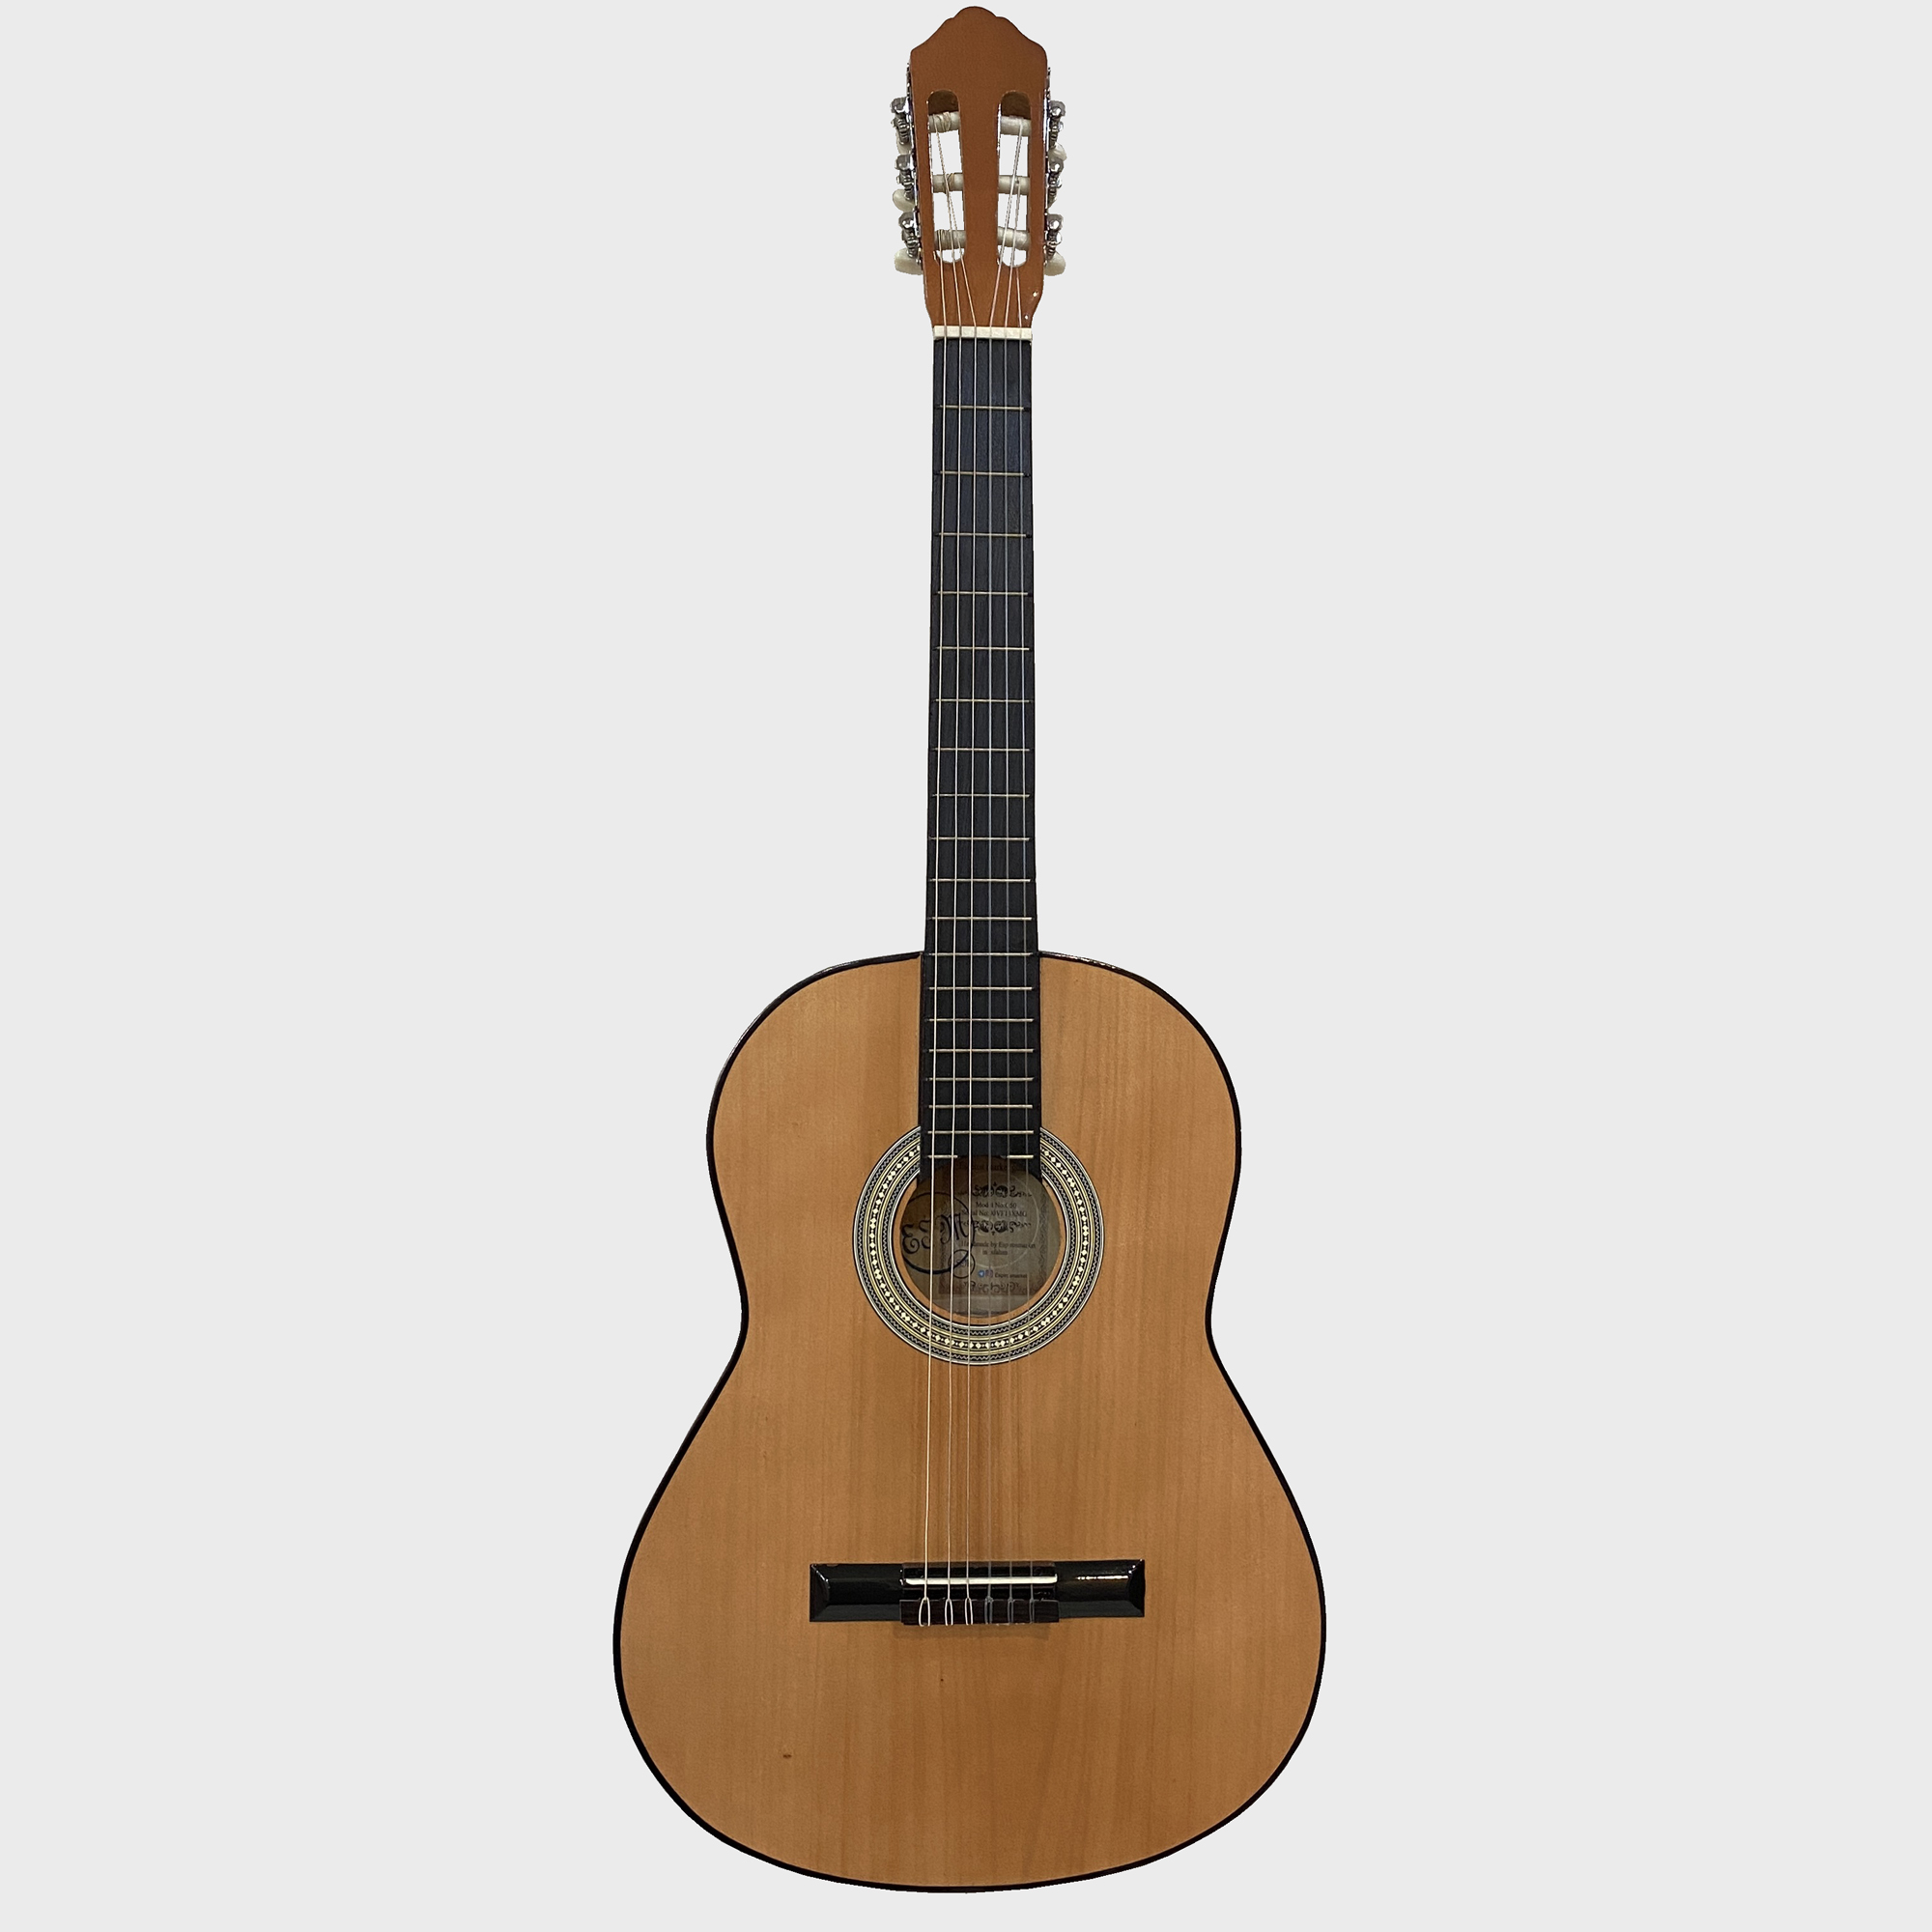 نکته خرید - قیمت روز گیتار کلاسیک اسپیروس مارکت مدل C50 کد NATURAL خرید